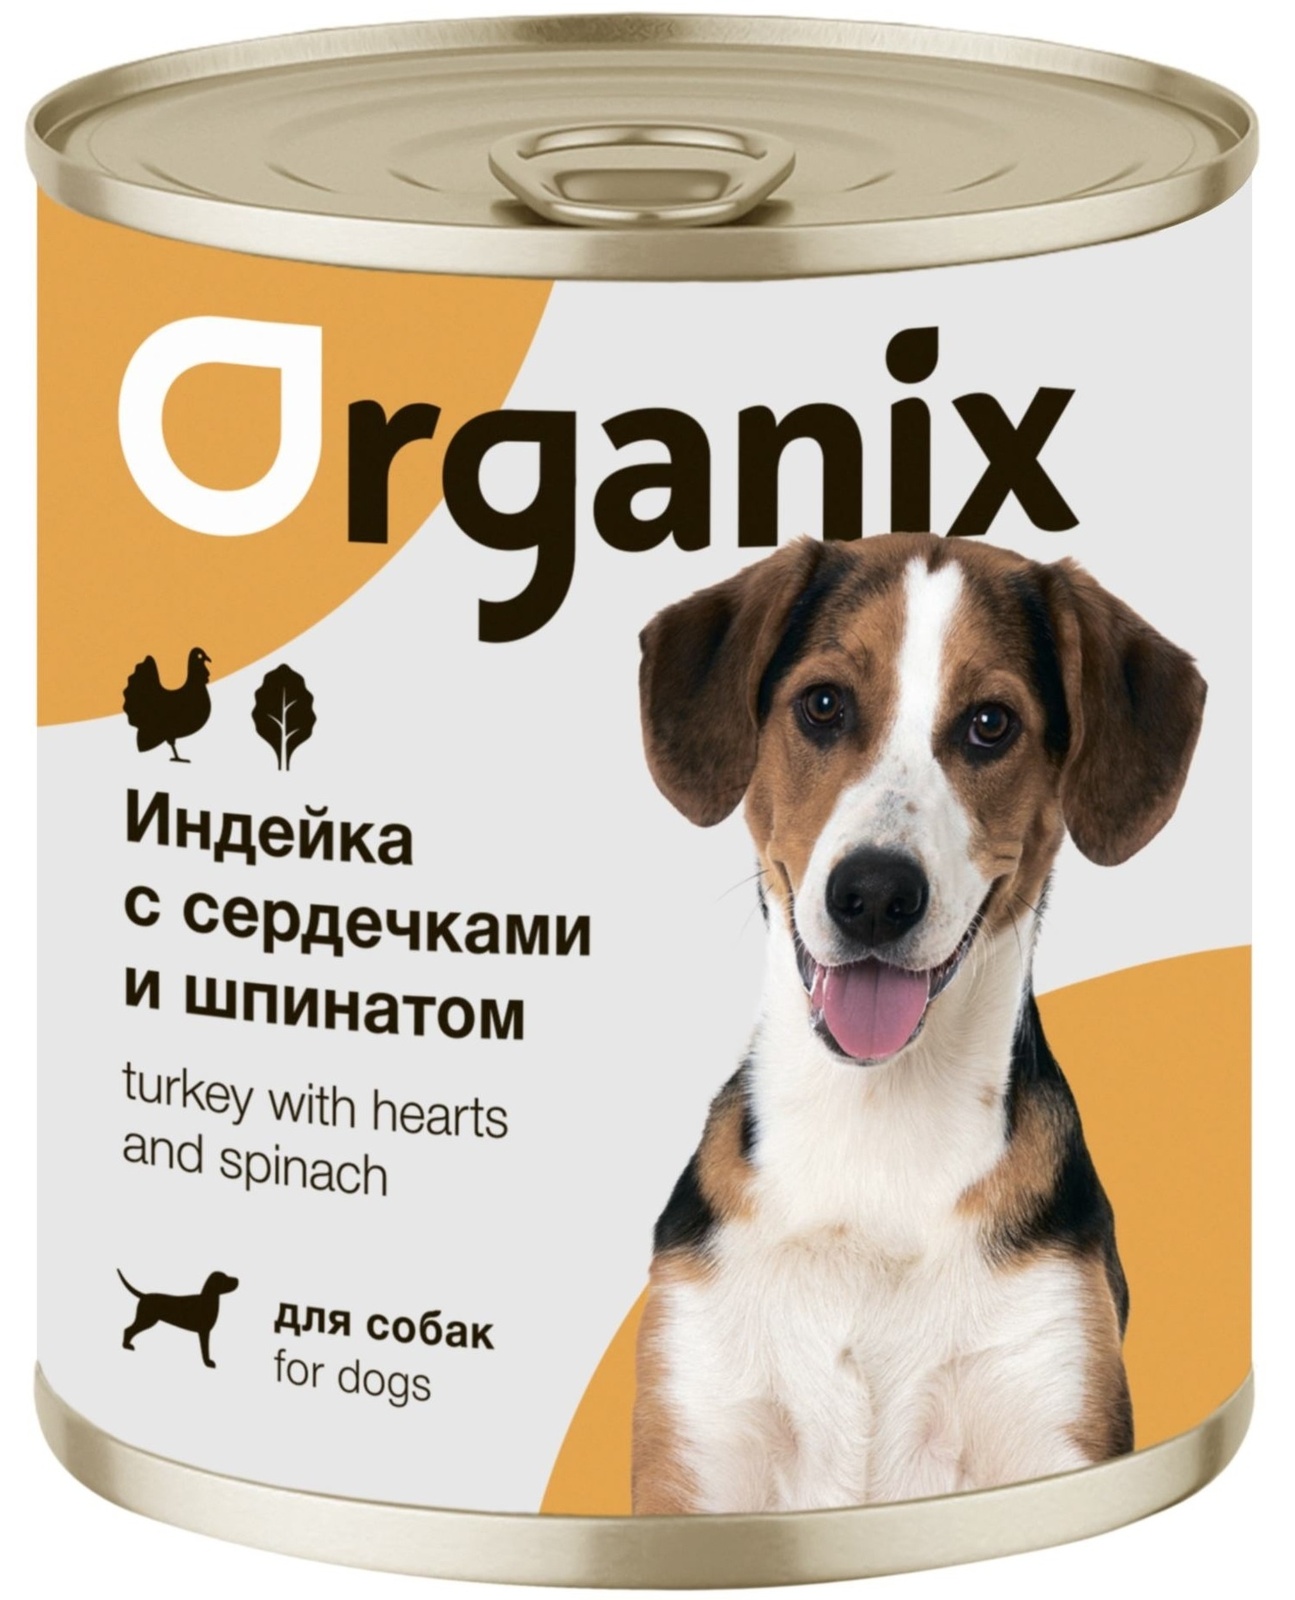 Organix консервы Organix консервы для собак Индейка с сердечками и шпинатом (400 г) organix консервы organix консервы для собак заливное из говядины с черникой 400 г